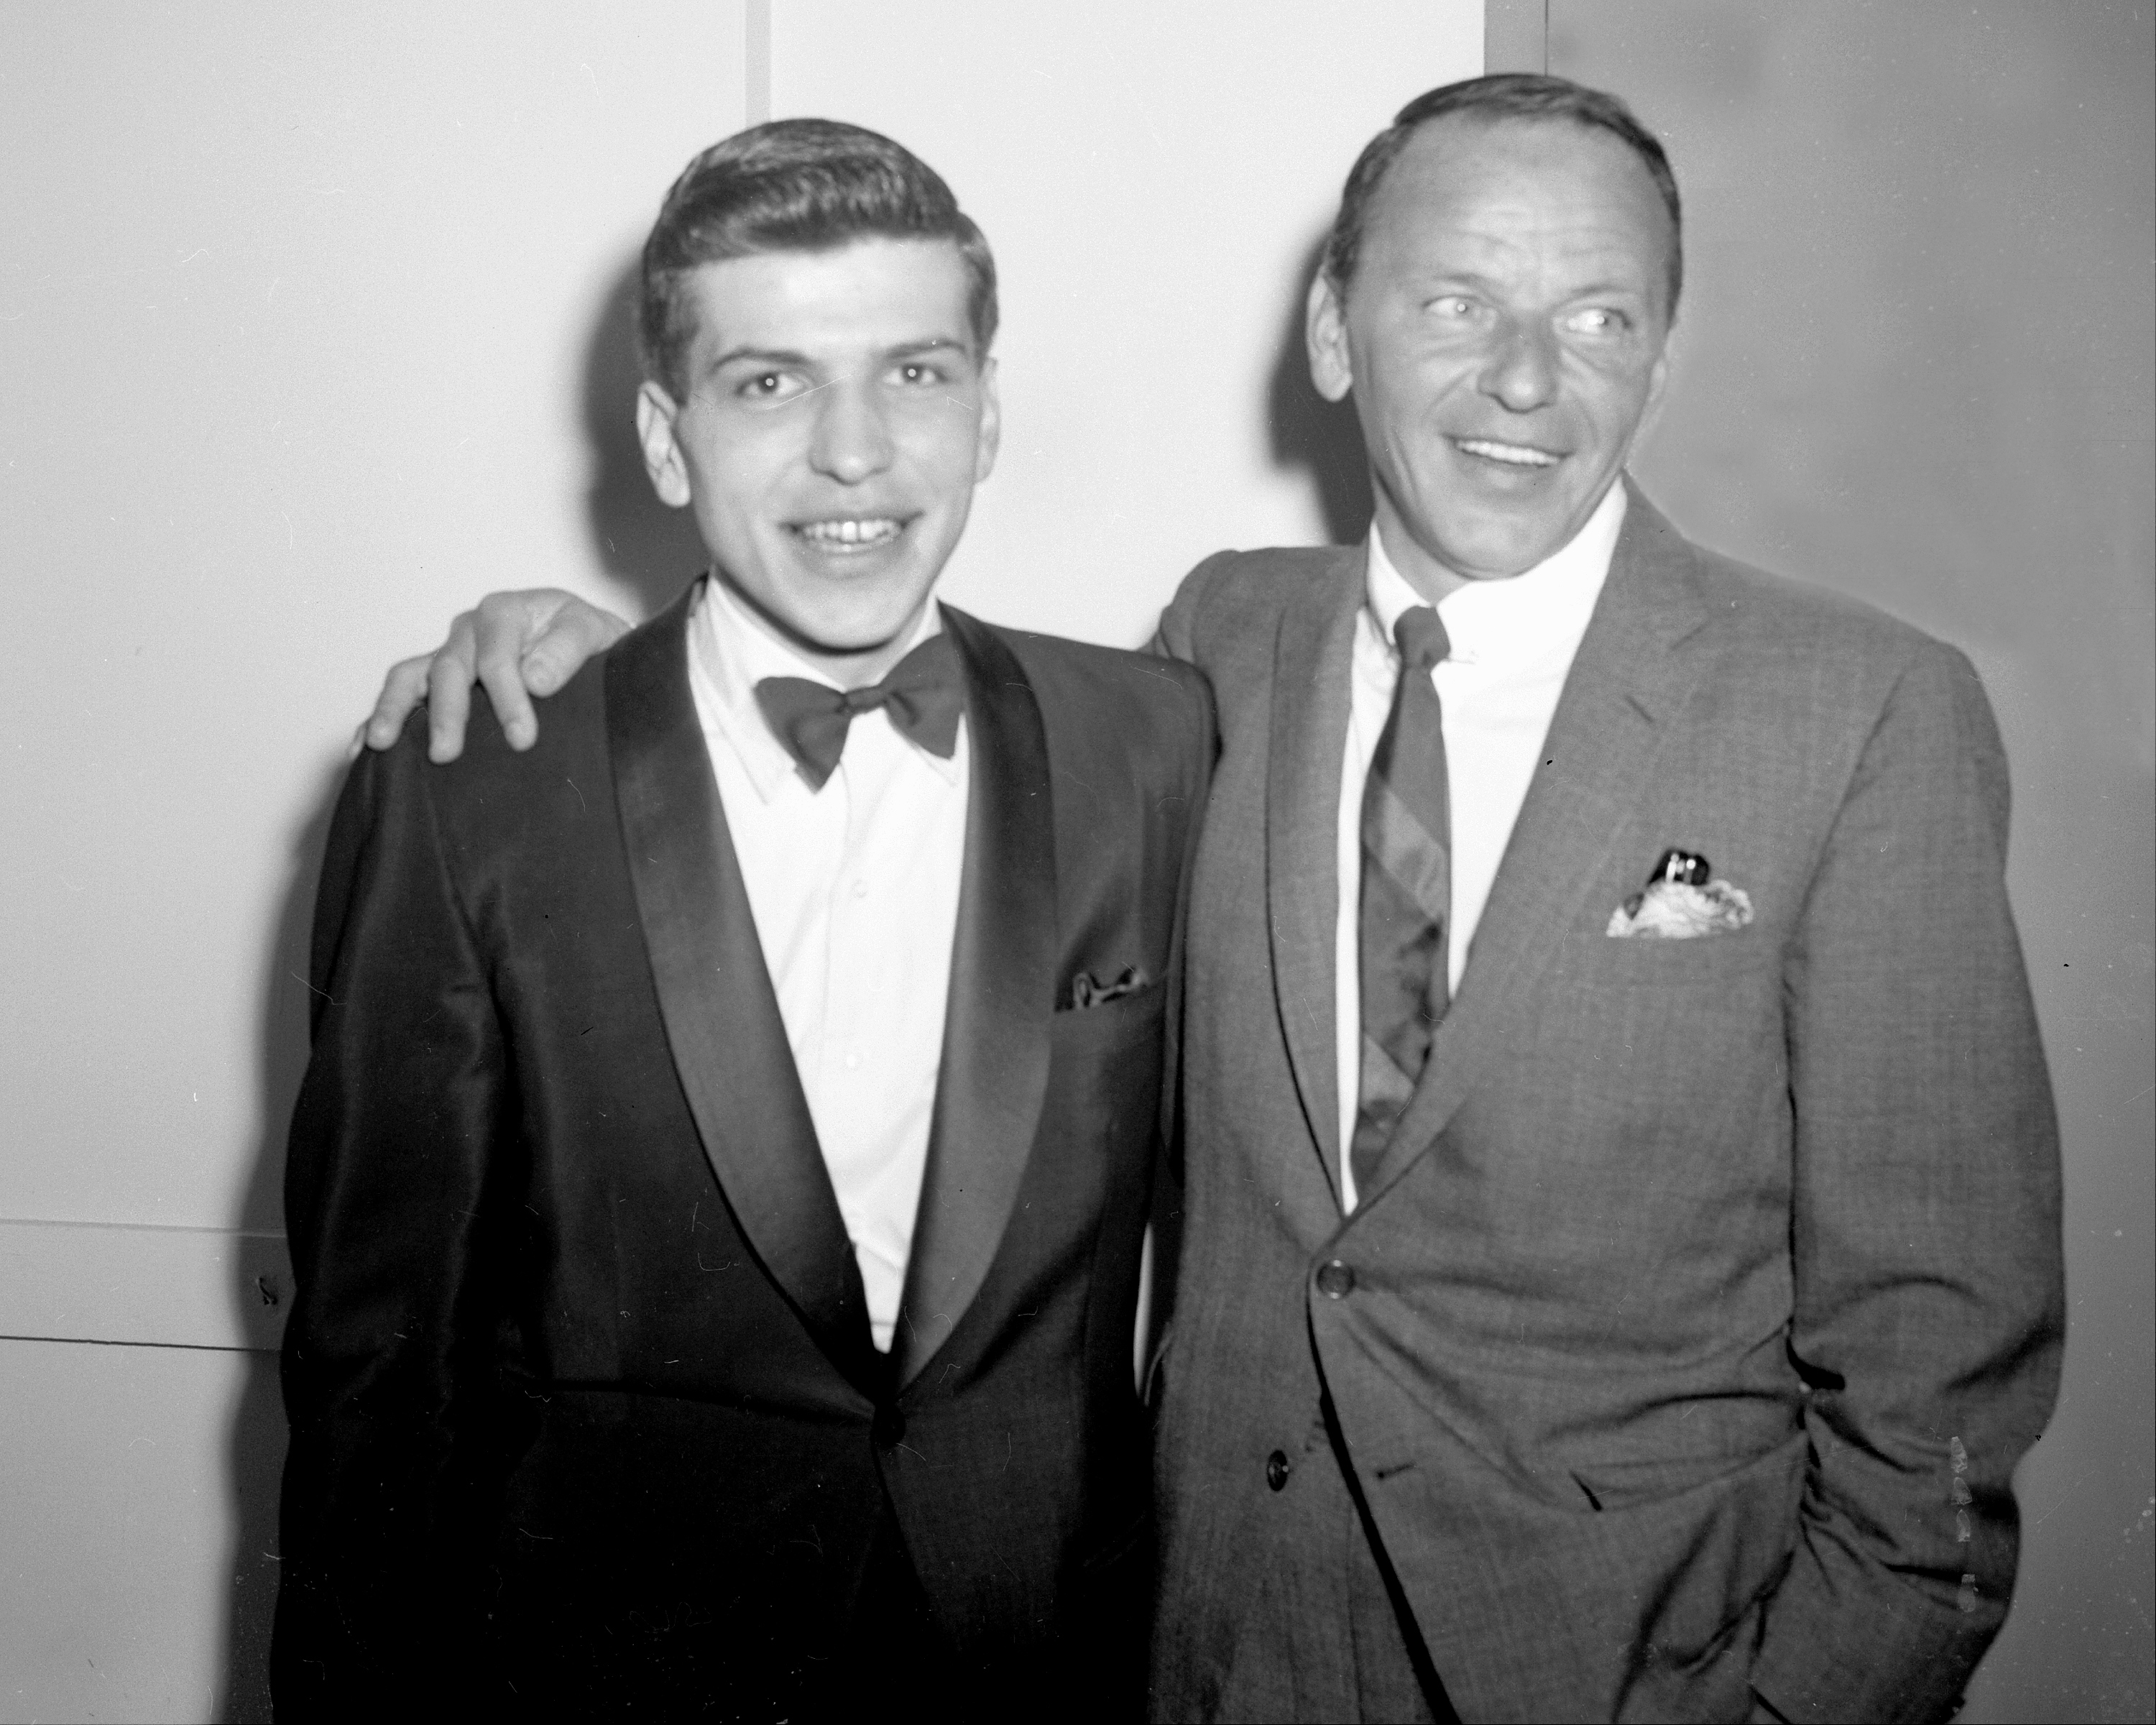 Frank Sinatra Jr posing with his dad